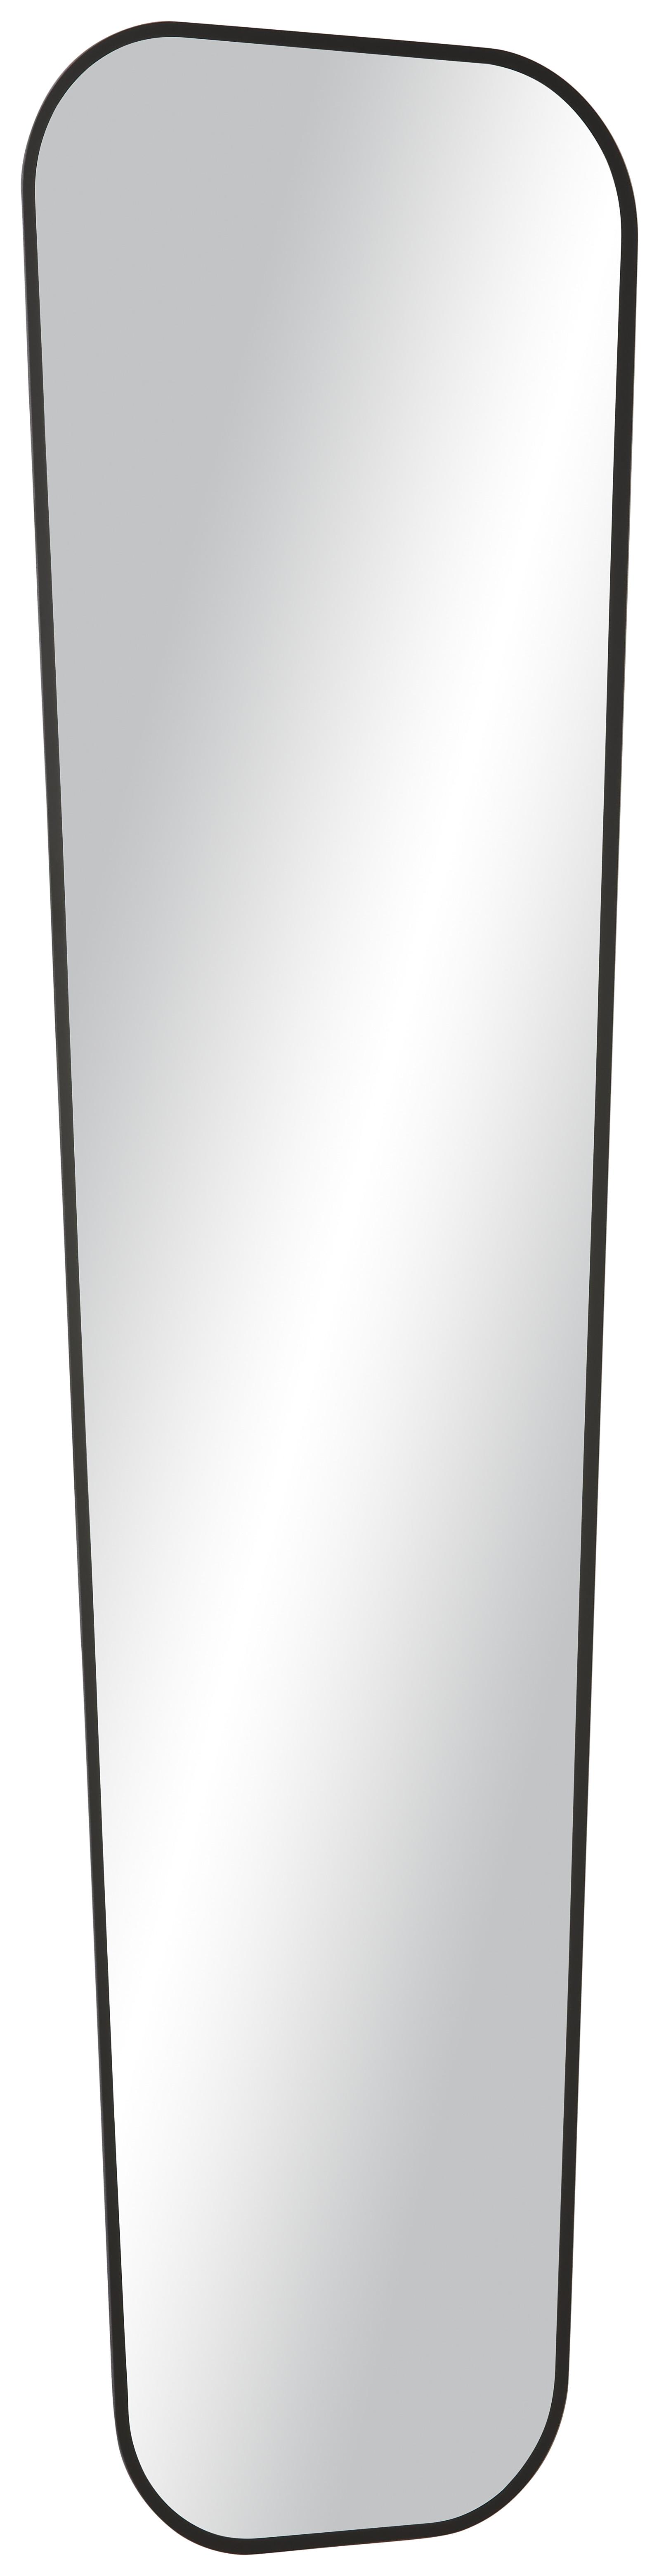 Spiegel in Schwarz - MODERN, Glas (35/125cm) - Modern Living